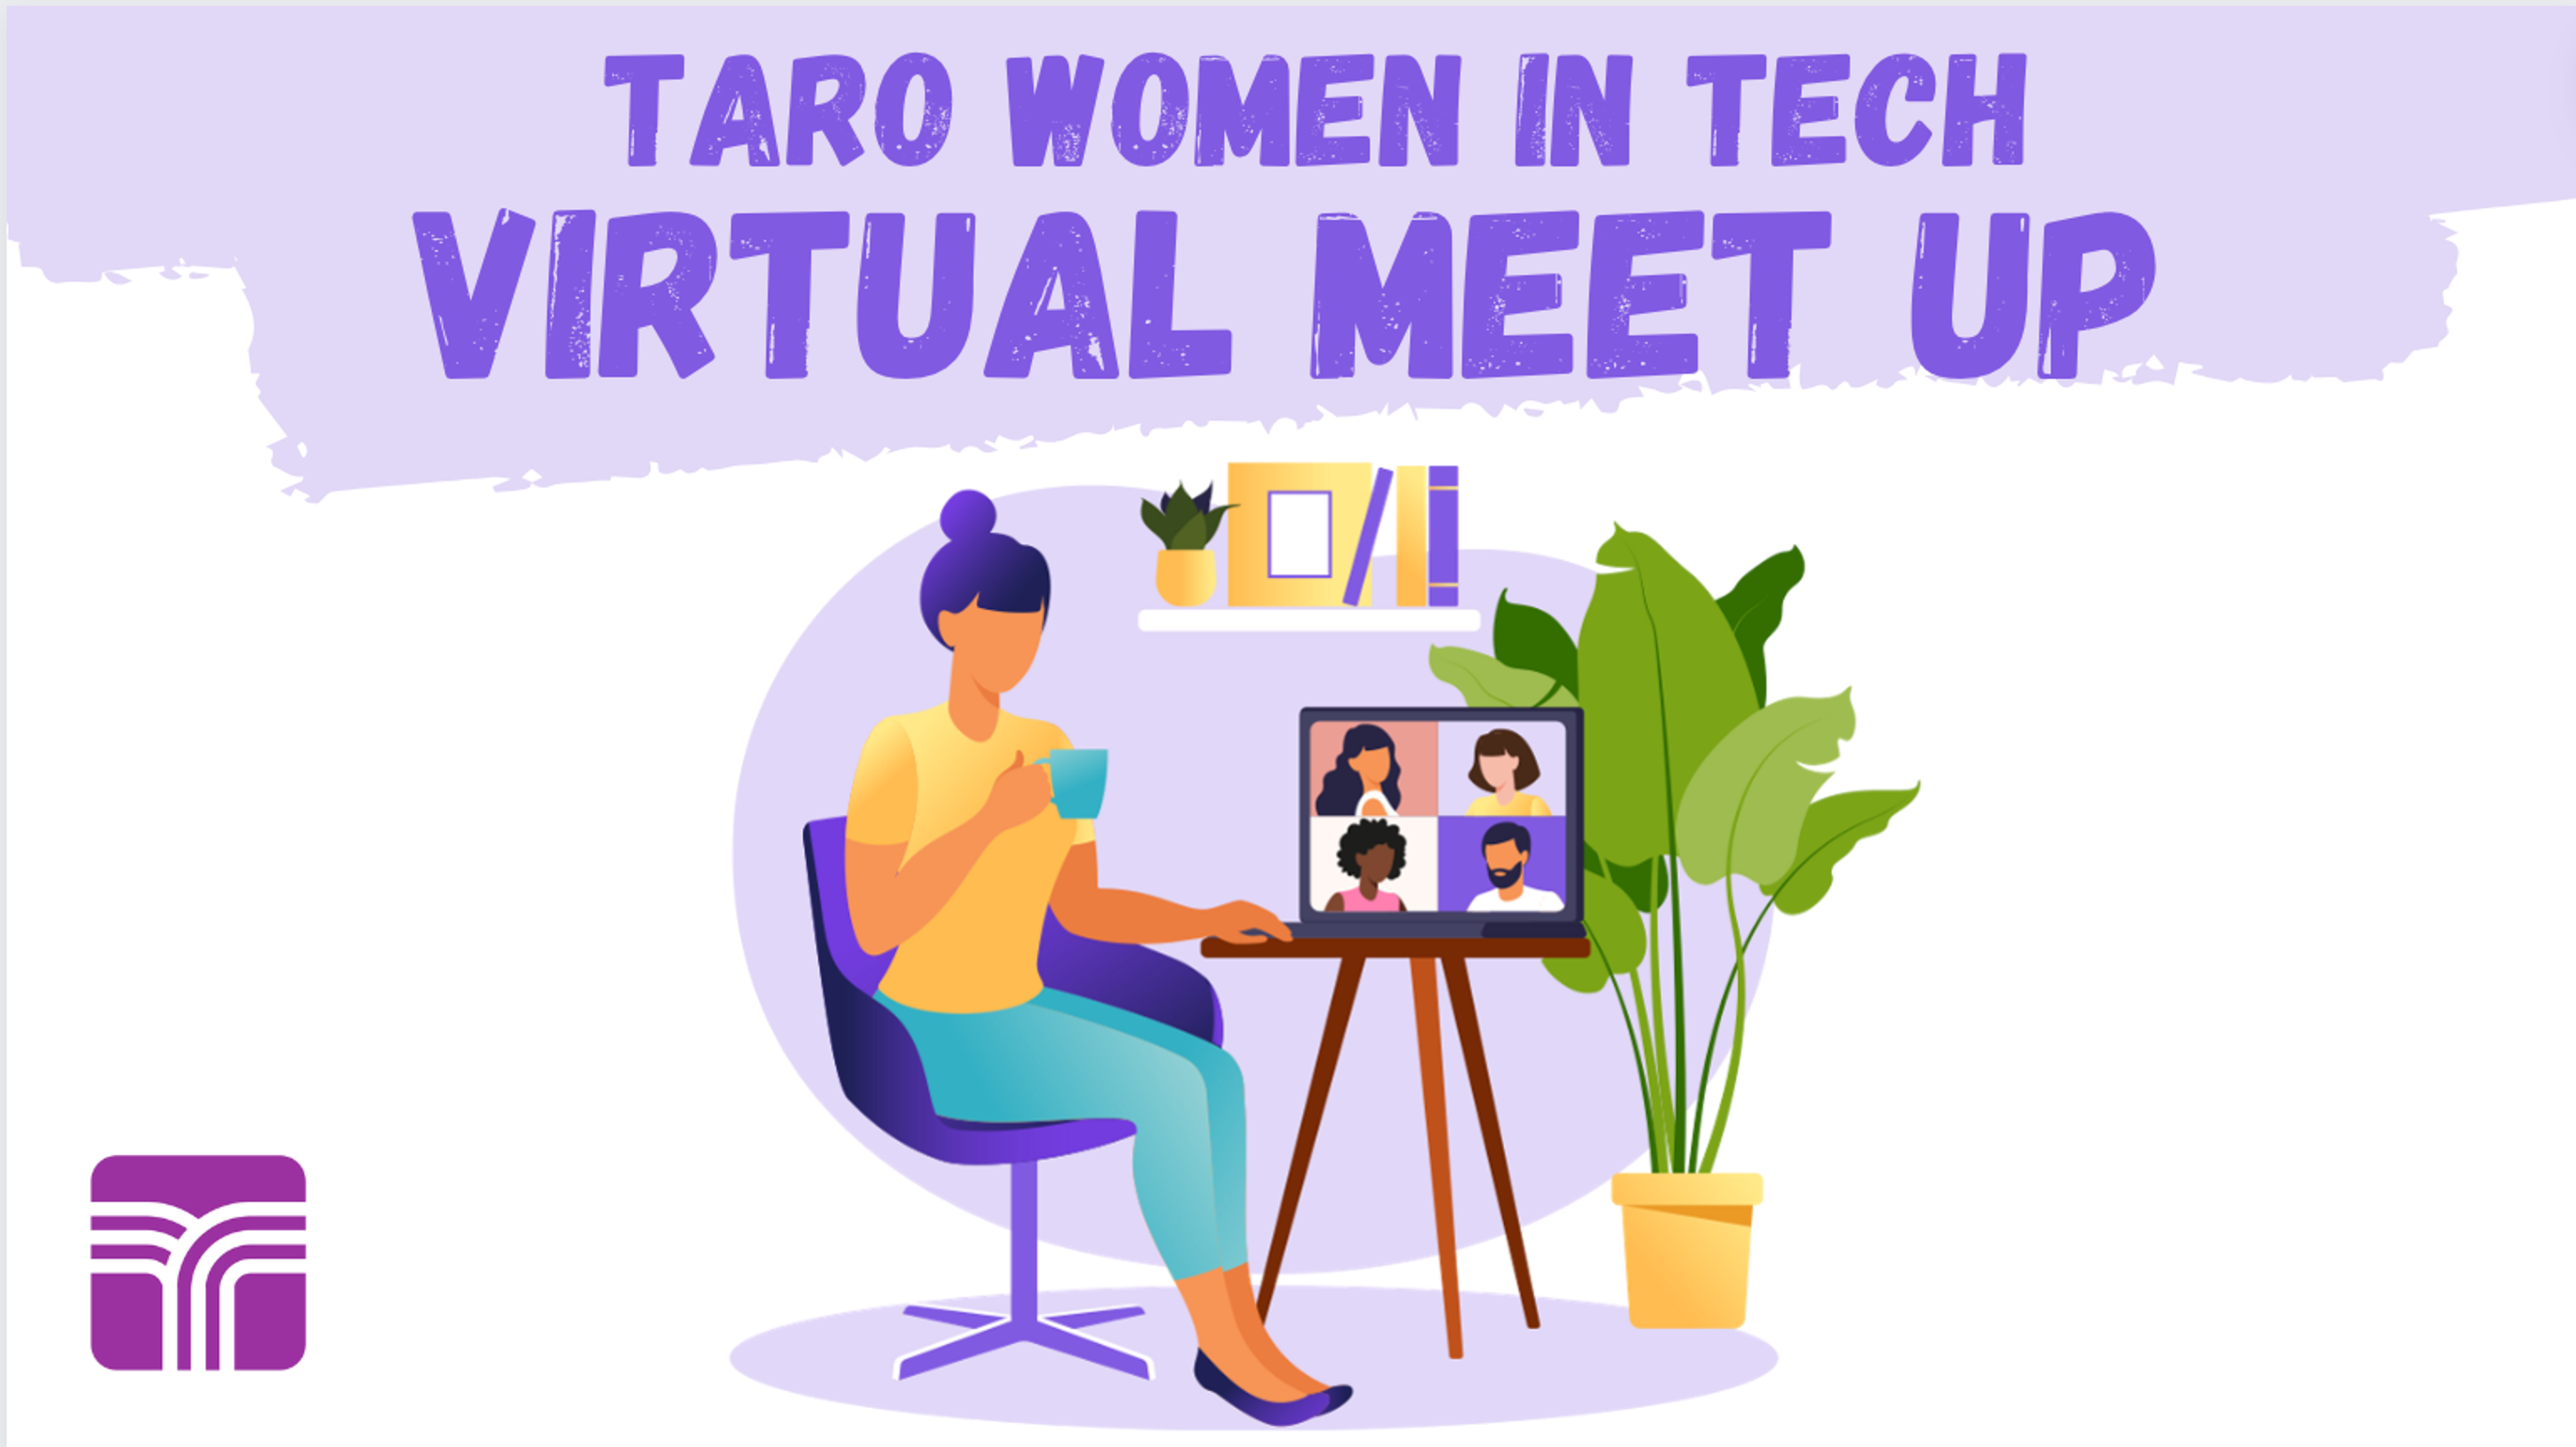 Taro Women in Tech Virtual Meet Up event